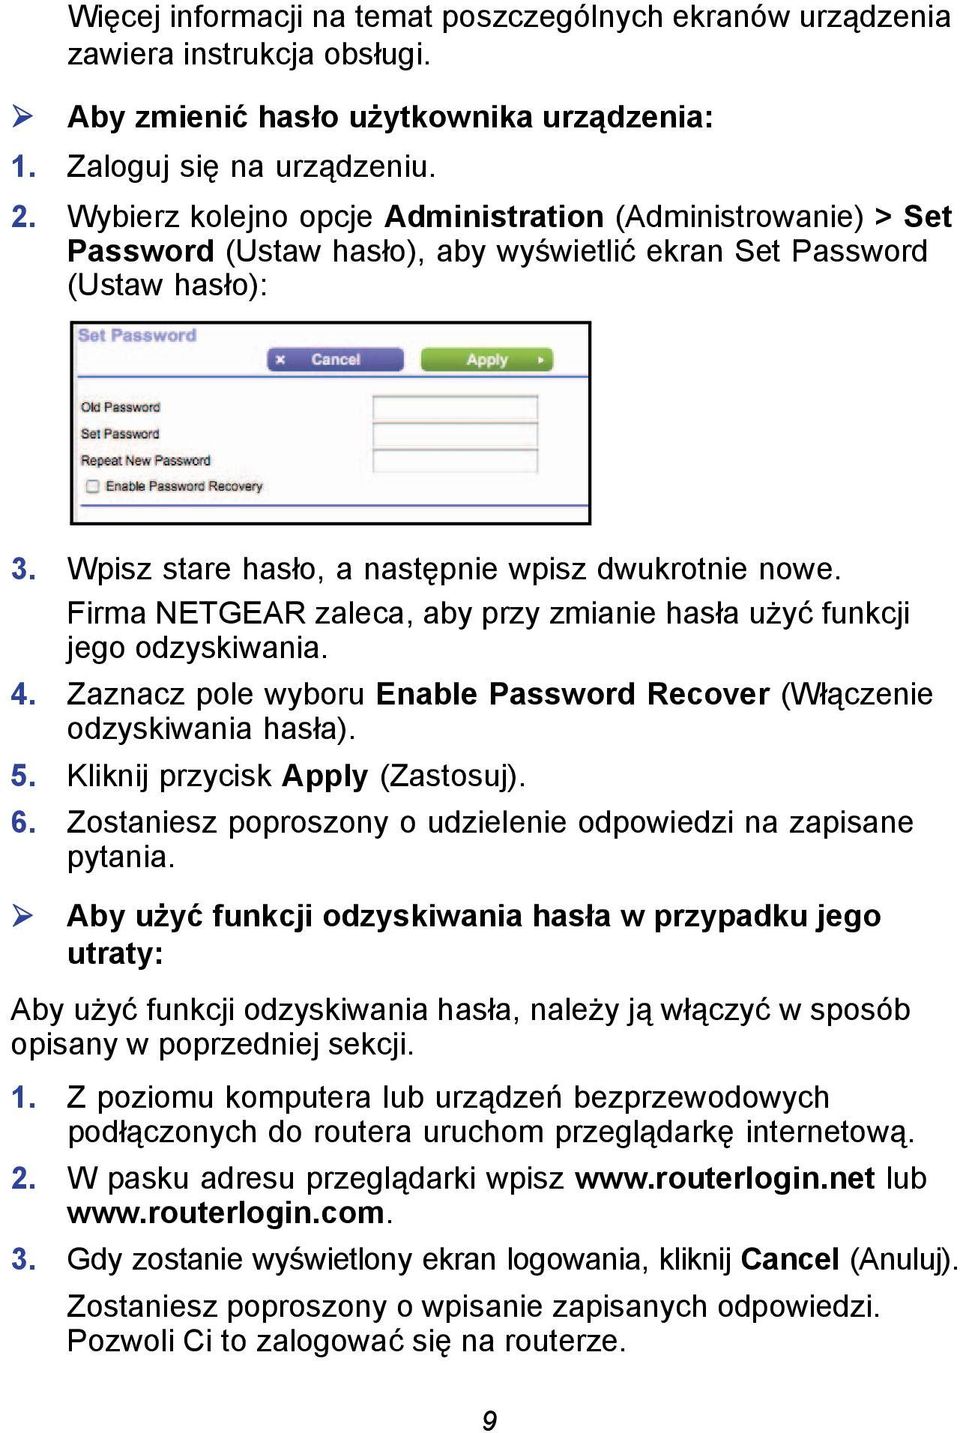 Firma NETGEAR zaleca, aby przy zmianie hasła użyć funkcji jego odzyskiwania. 4. Zaznacz pole wyboru Enable Password Recover (Włączenie odzyskiwania hasła). 5. Kliknij przycisk Apply (Zastosuj). 6.